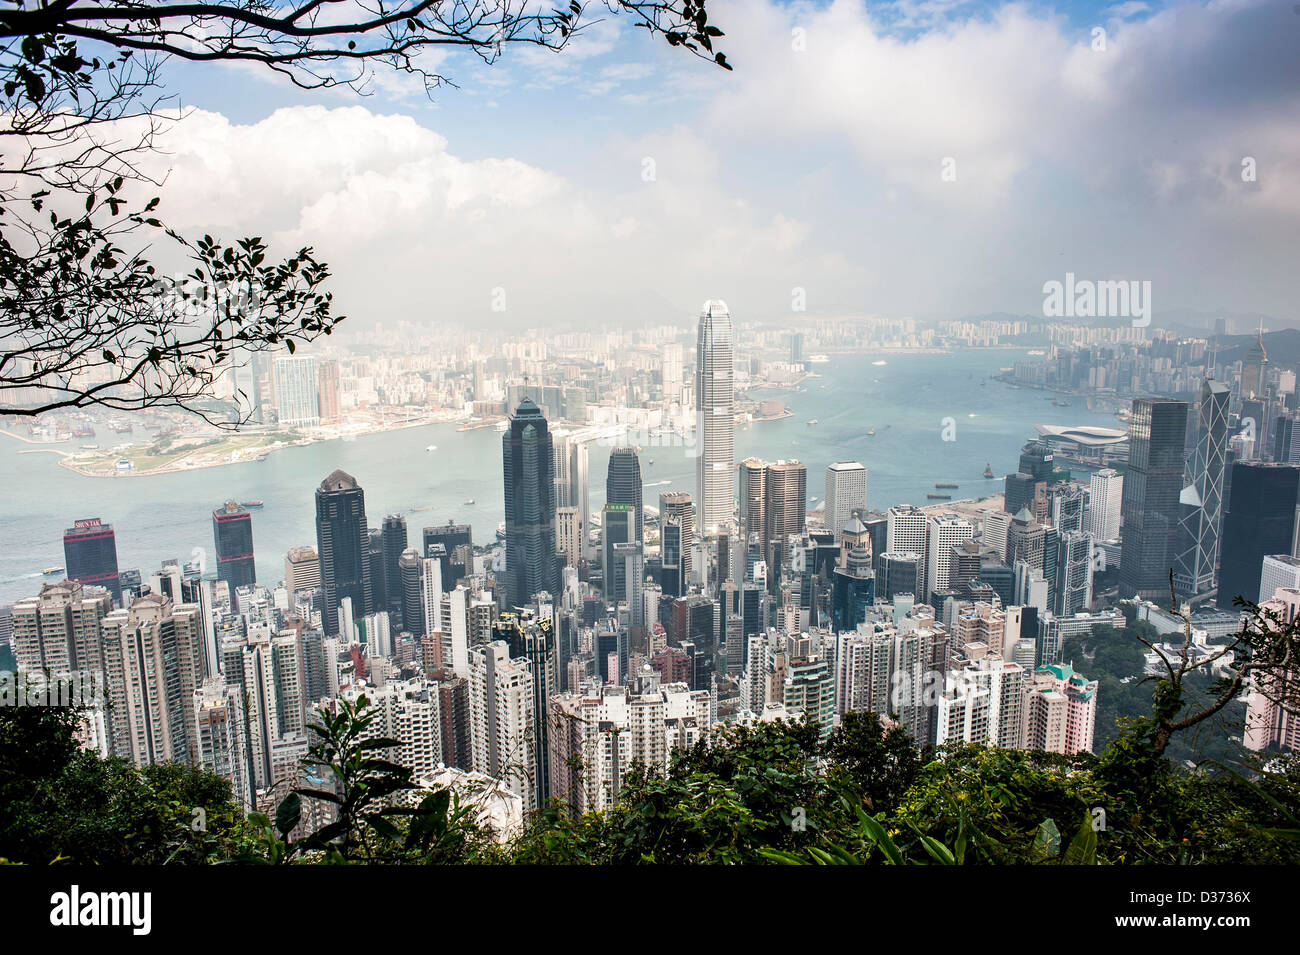 HONG KONG - SAR of CHINA: General view of the Hong Kong Skyline from The Peak Stock Photo